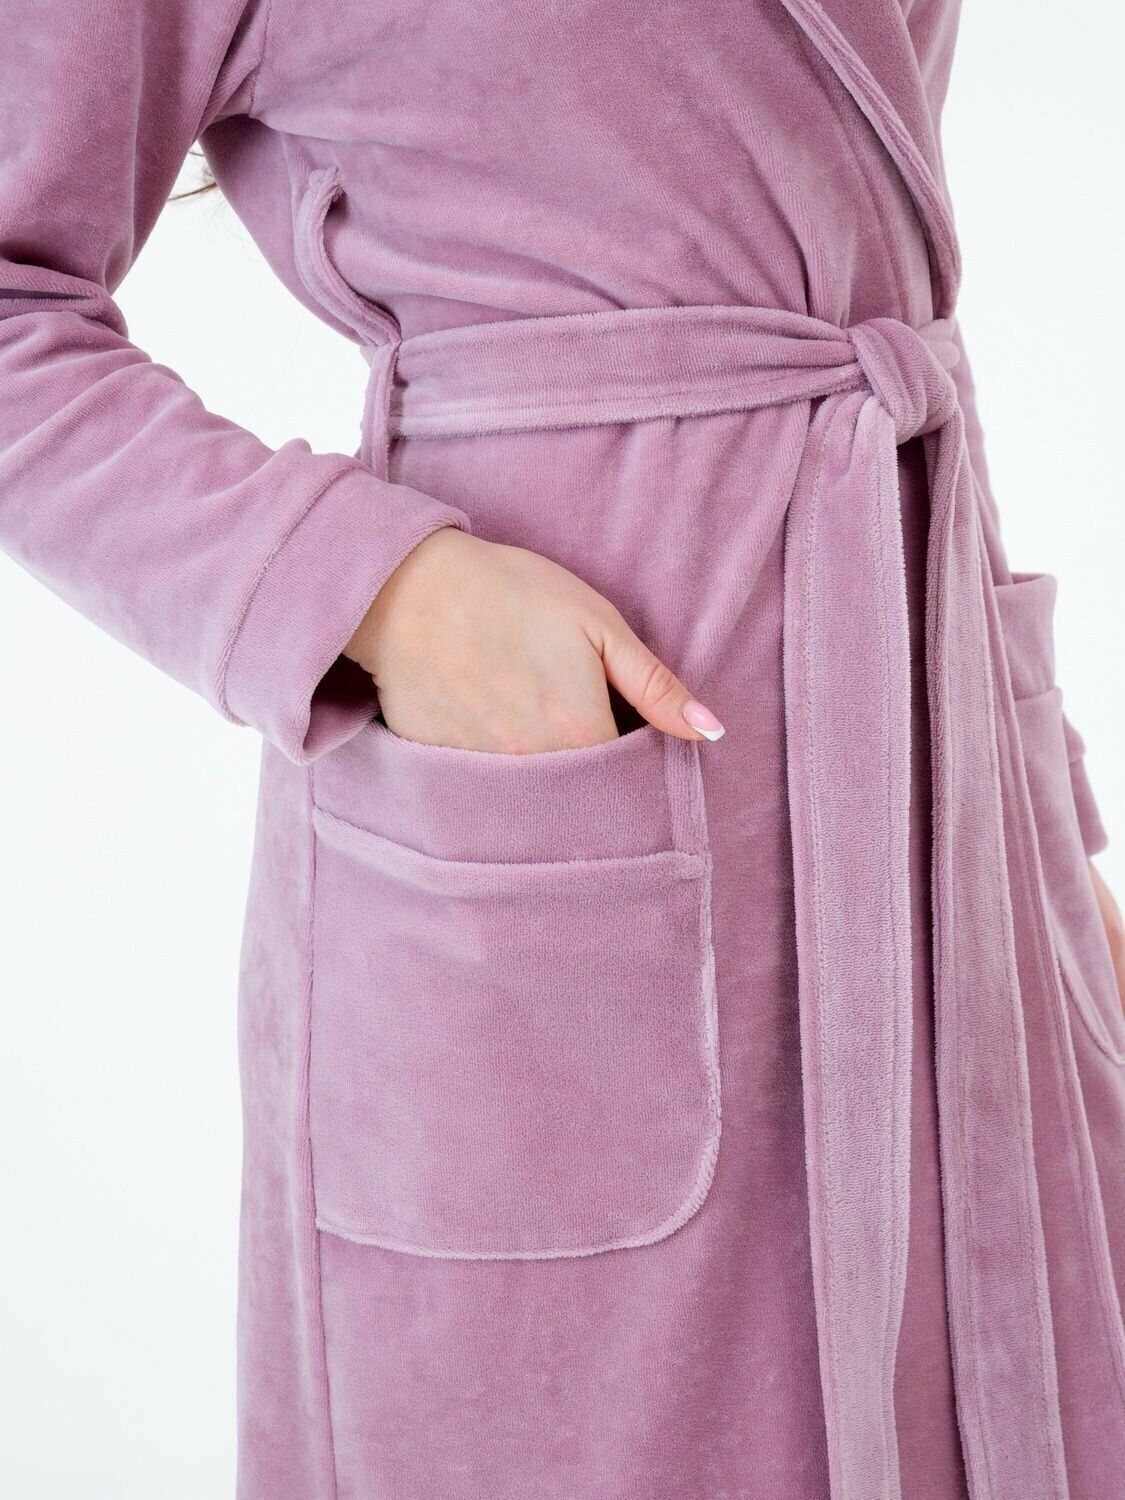 Женский велюровый халат с шалькой Росхалат, пастельно-лиловый. Размер 46-48 - фотография № 2